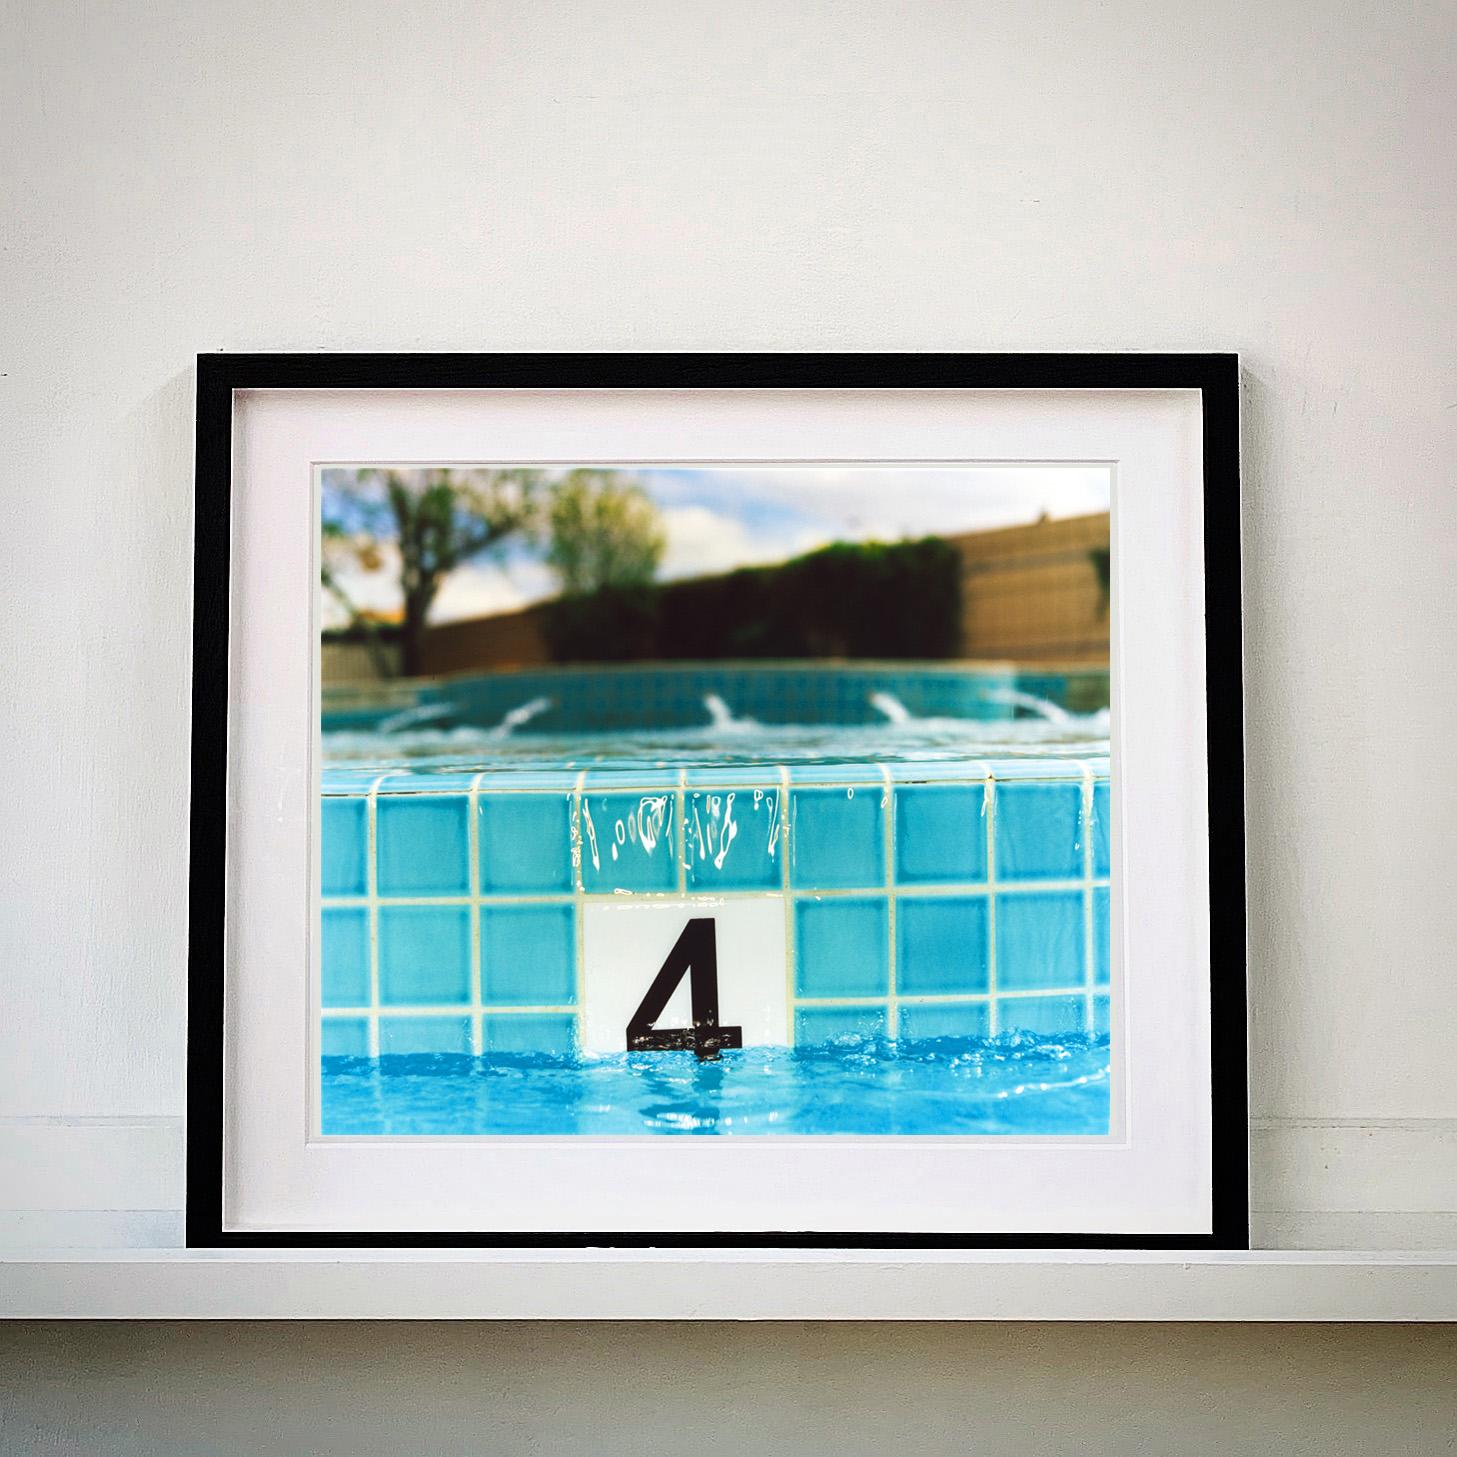 Richard Heeps Traum in Farbe 'Pool Installation'.
Neun einzelne Kunstwerke, lebendig und doch heiter, nehmen Sie mit auf eine Reise durch Kalifornien und Nevada mit den Augen des Fotografen Richard Heeps. 

Diese Installation besteht aus neun